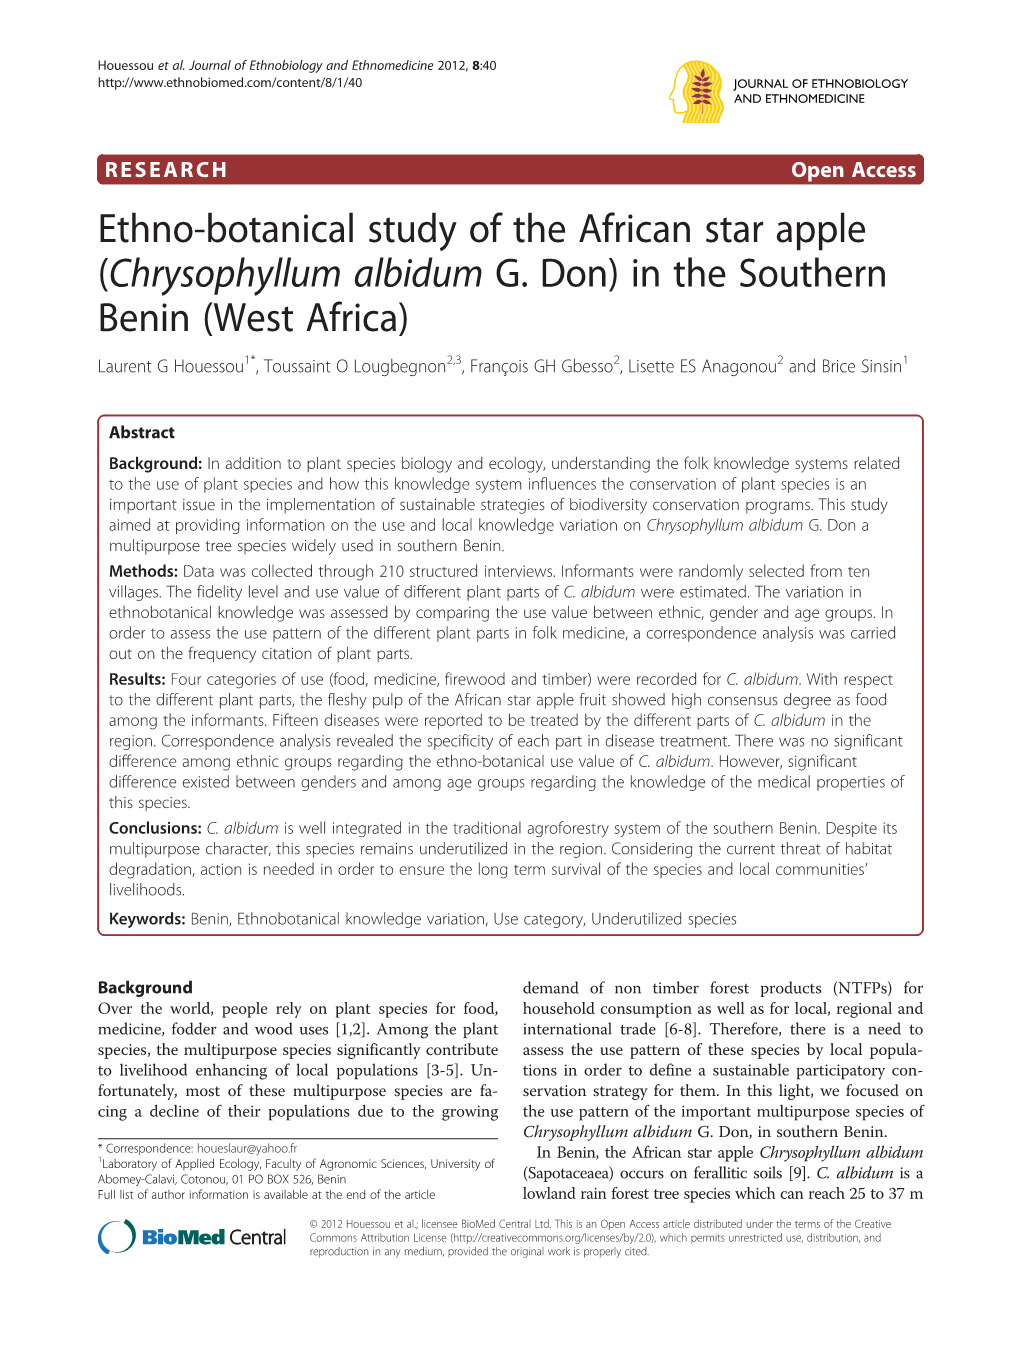 Ethno-Botanical Study of the African Star Apple (Chrysophyllum Albidum G